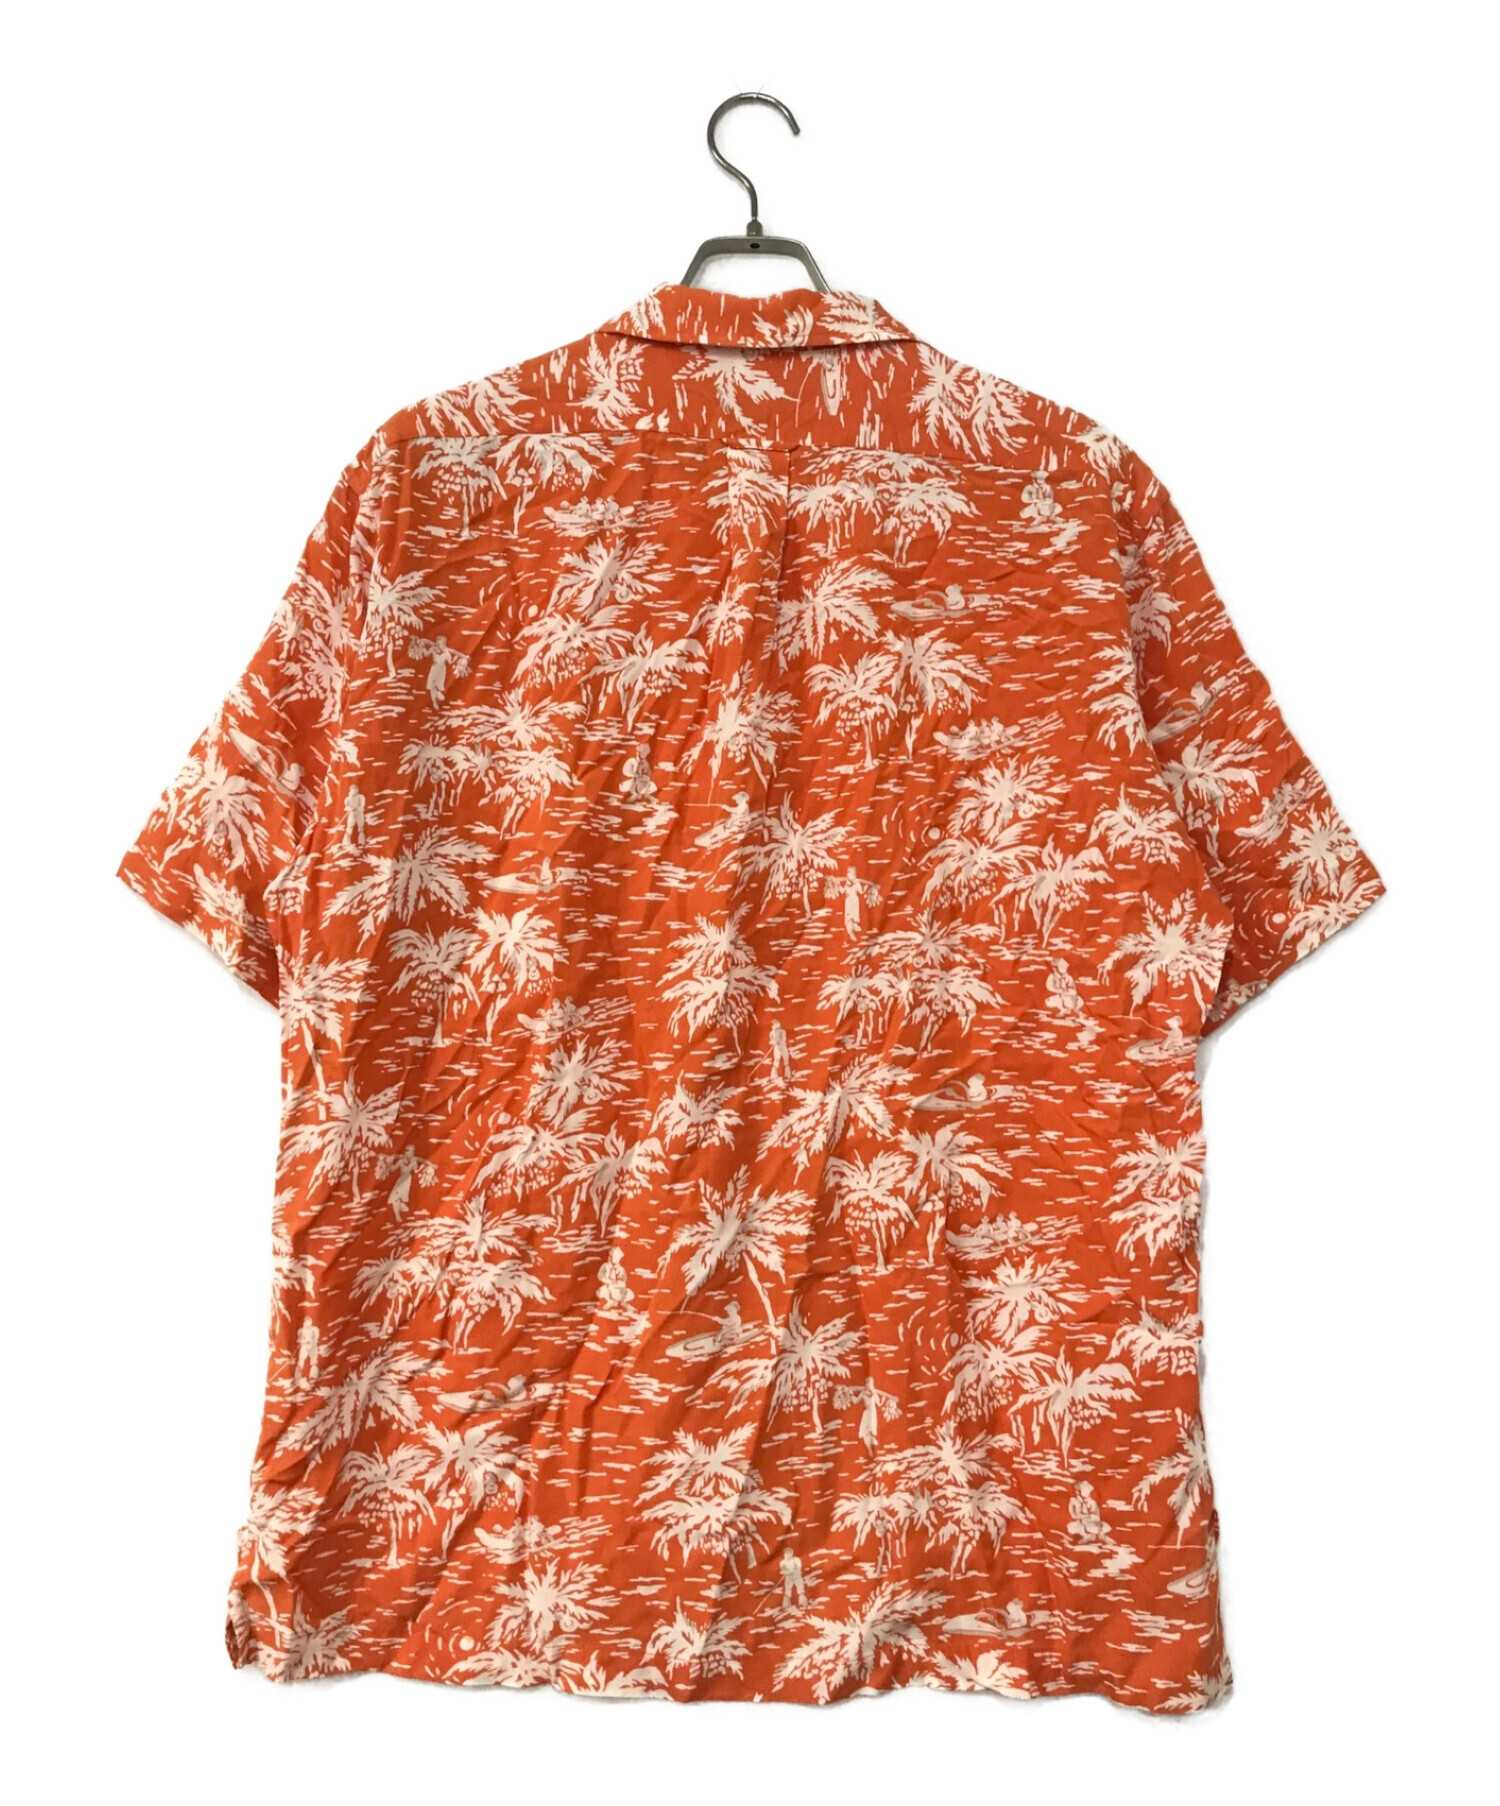 POLO RALPH LAUREN (ポロ・ラルフローレン) アロハシャツ オレンジ サイズ:L